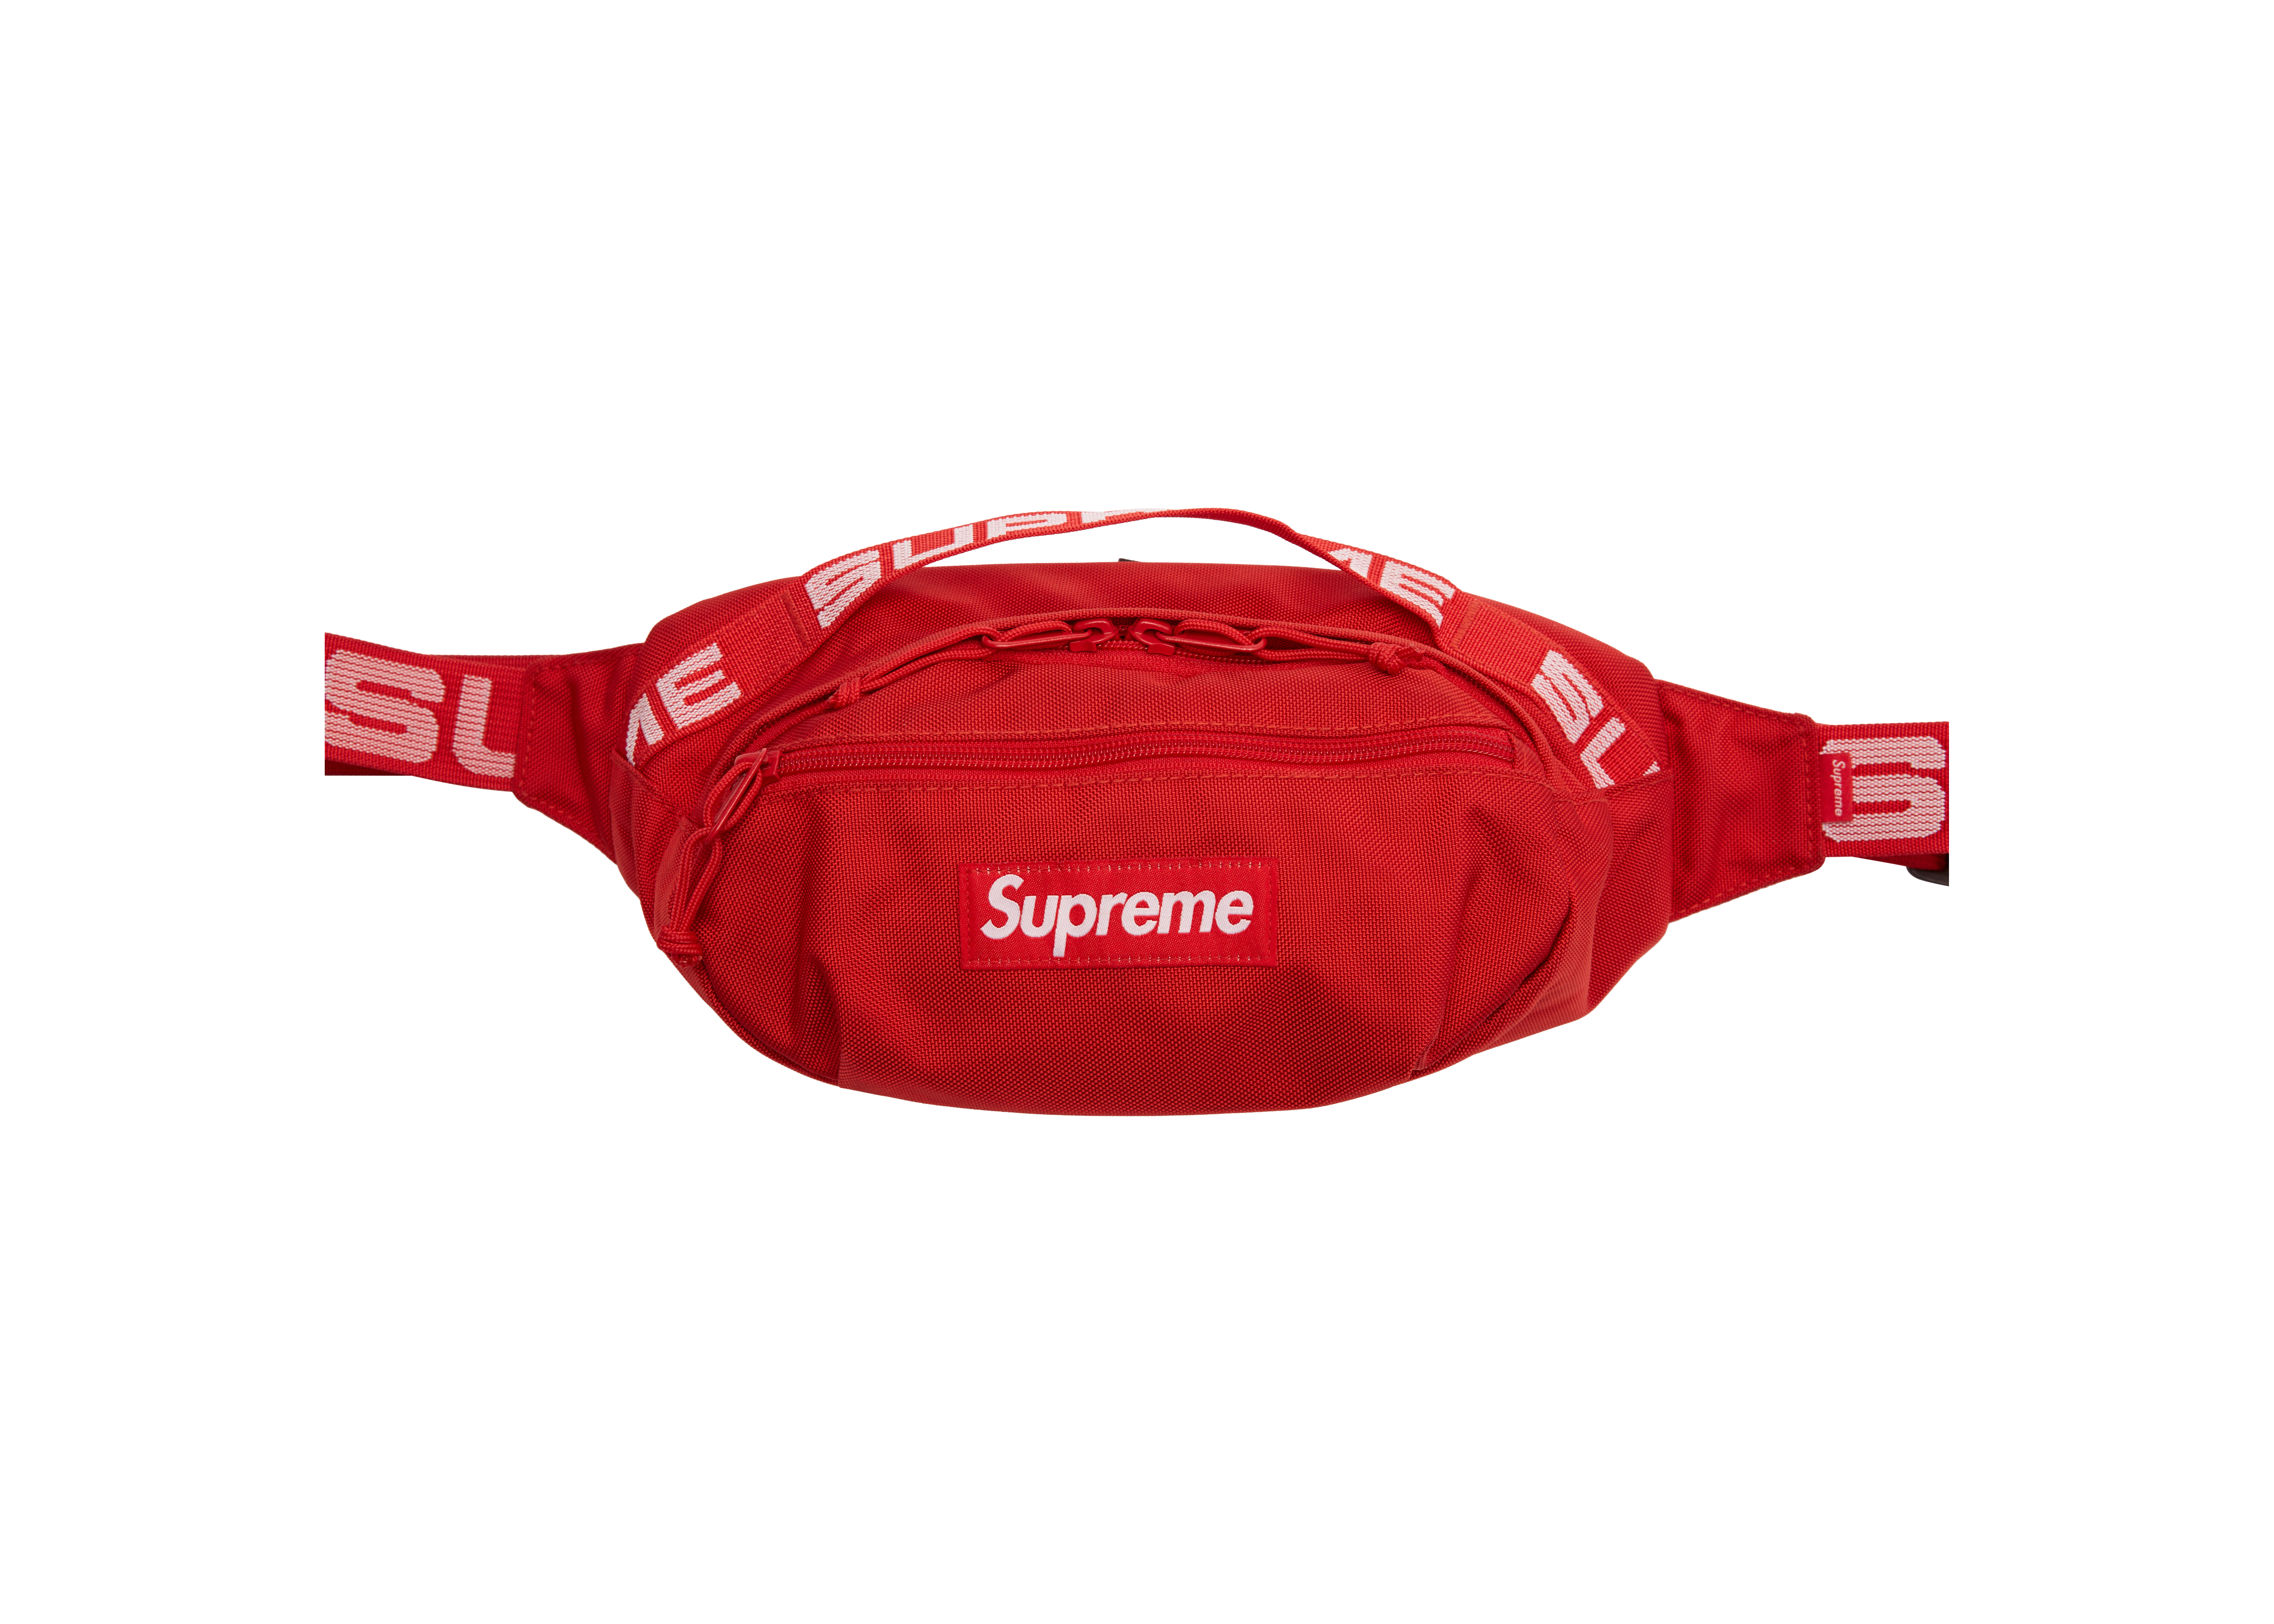 supreme waist bag red www.krzysztofbialy.com